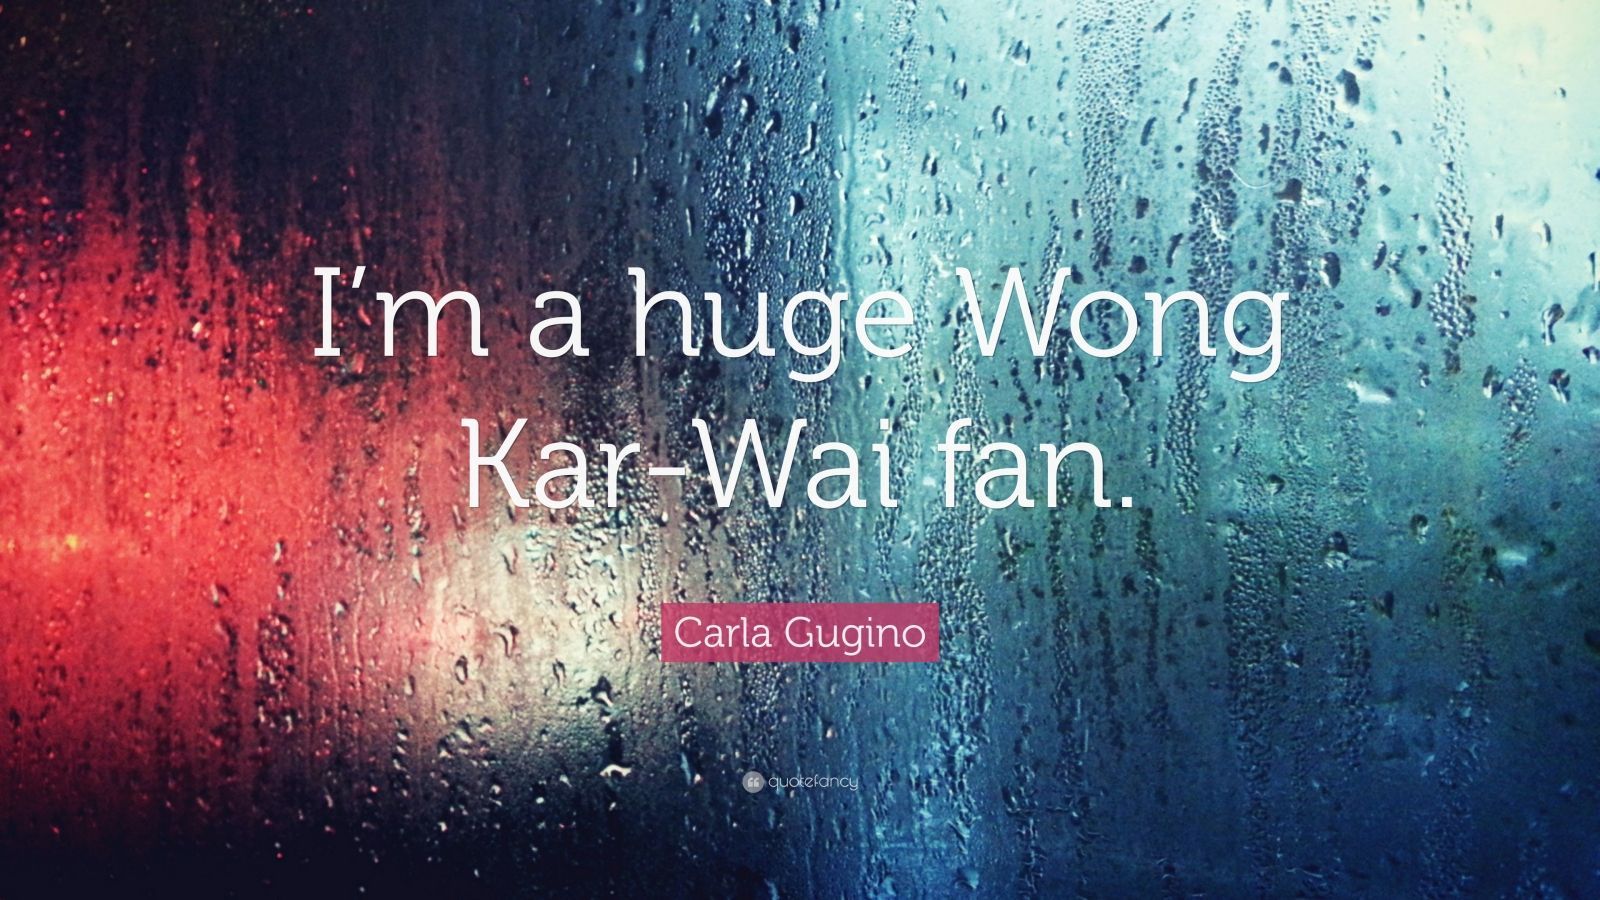 Carla Gugino Quote: “I'm A Huge Wong Kar Wai Fan.” (7 Wallpaper)